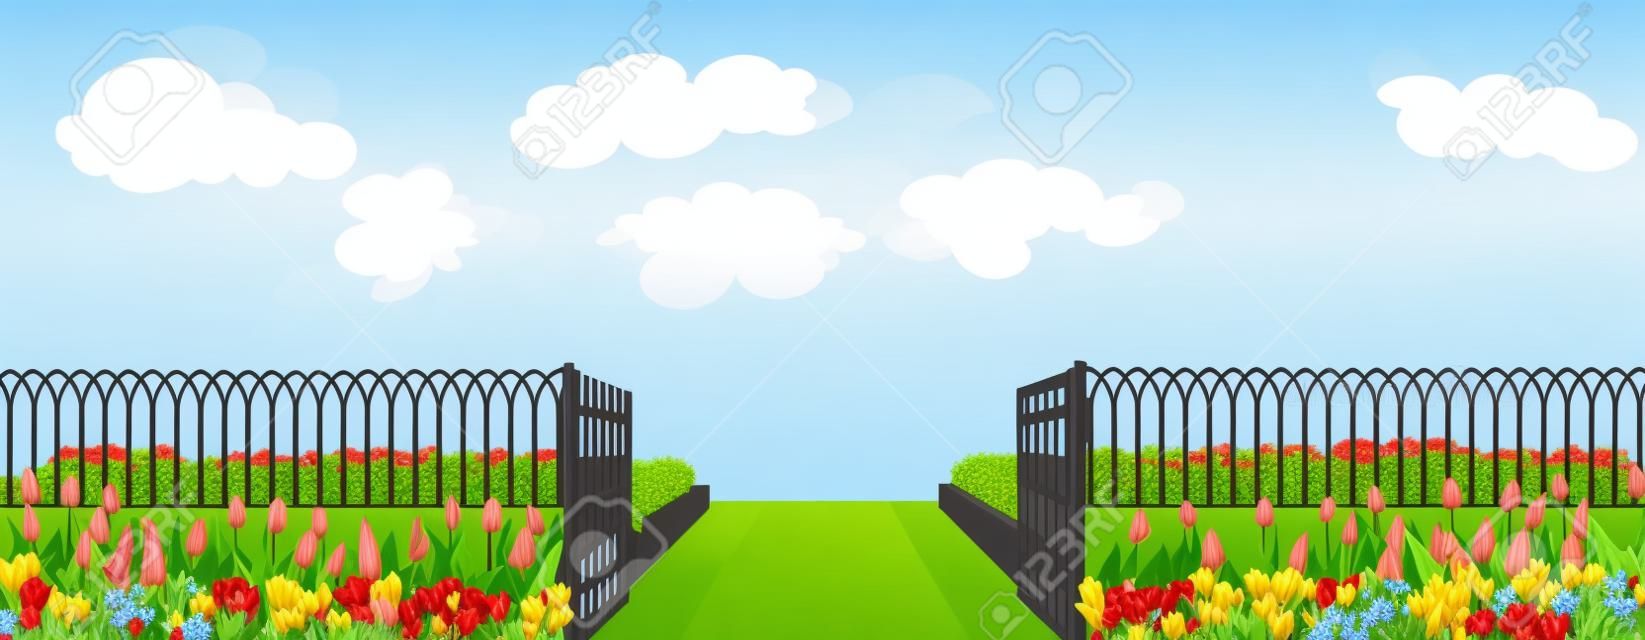 Recinzione d'ingresso con un cancello, un'aiuola e fiori tulipani in stile cartoon illustrazione vettoriale